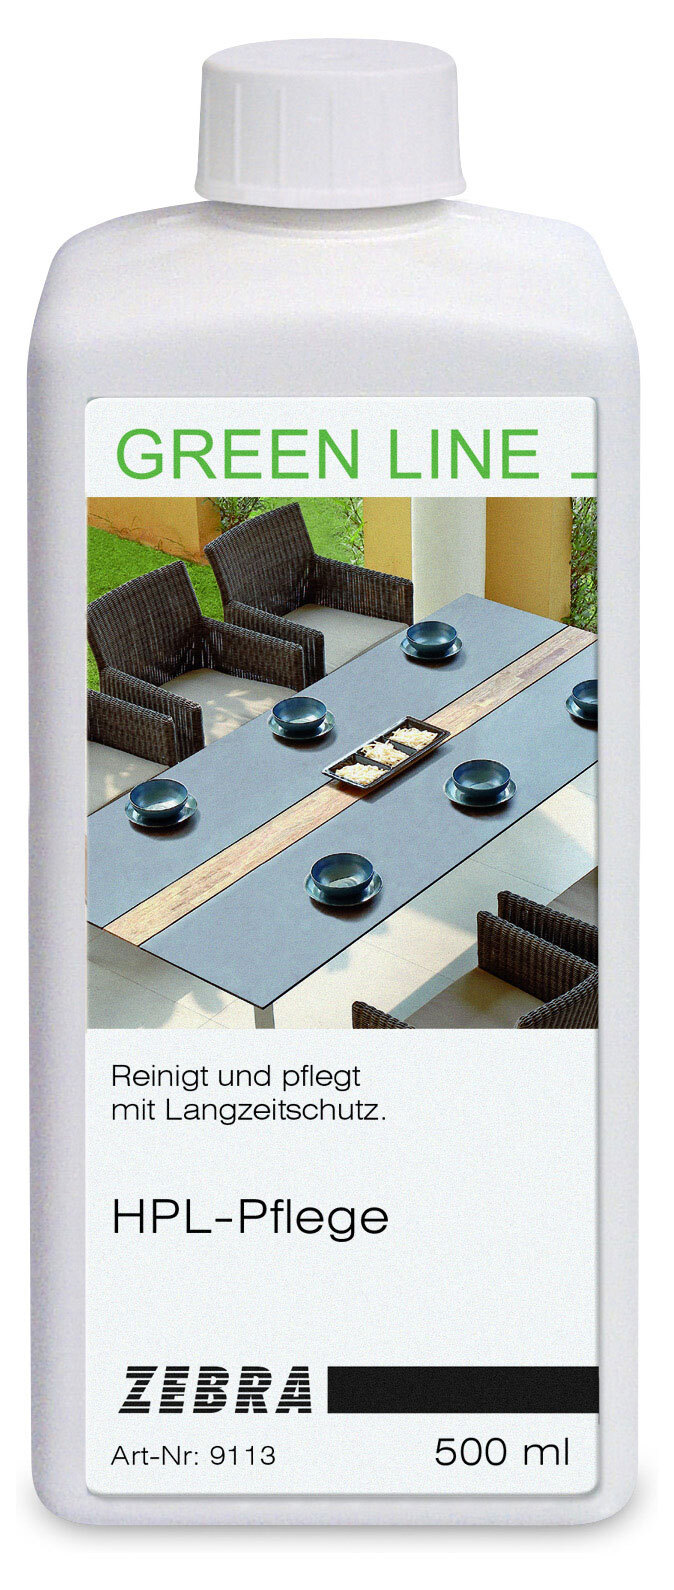 greenline by ZEBRA Reiniger GREEN LINE für Kunststoffe